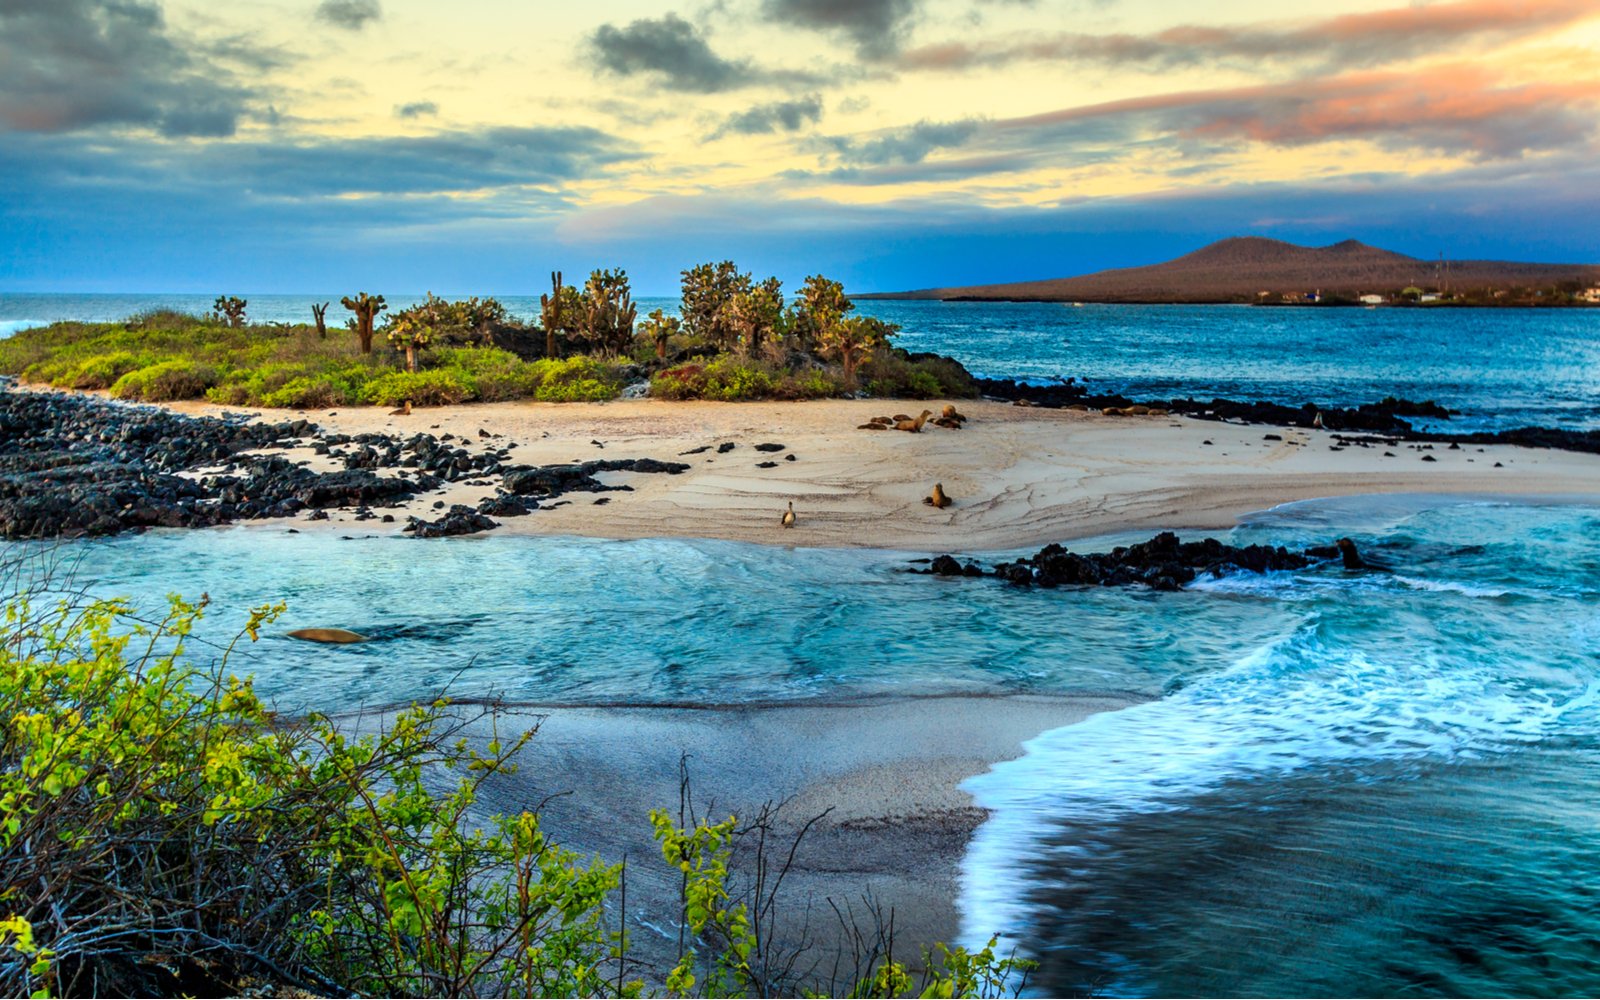 Ποια είναι η καλύτερη εποχή για να επισκεφτείτε τα νησιά Γκαλαπάγκος;